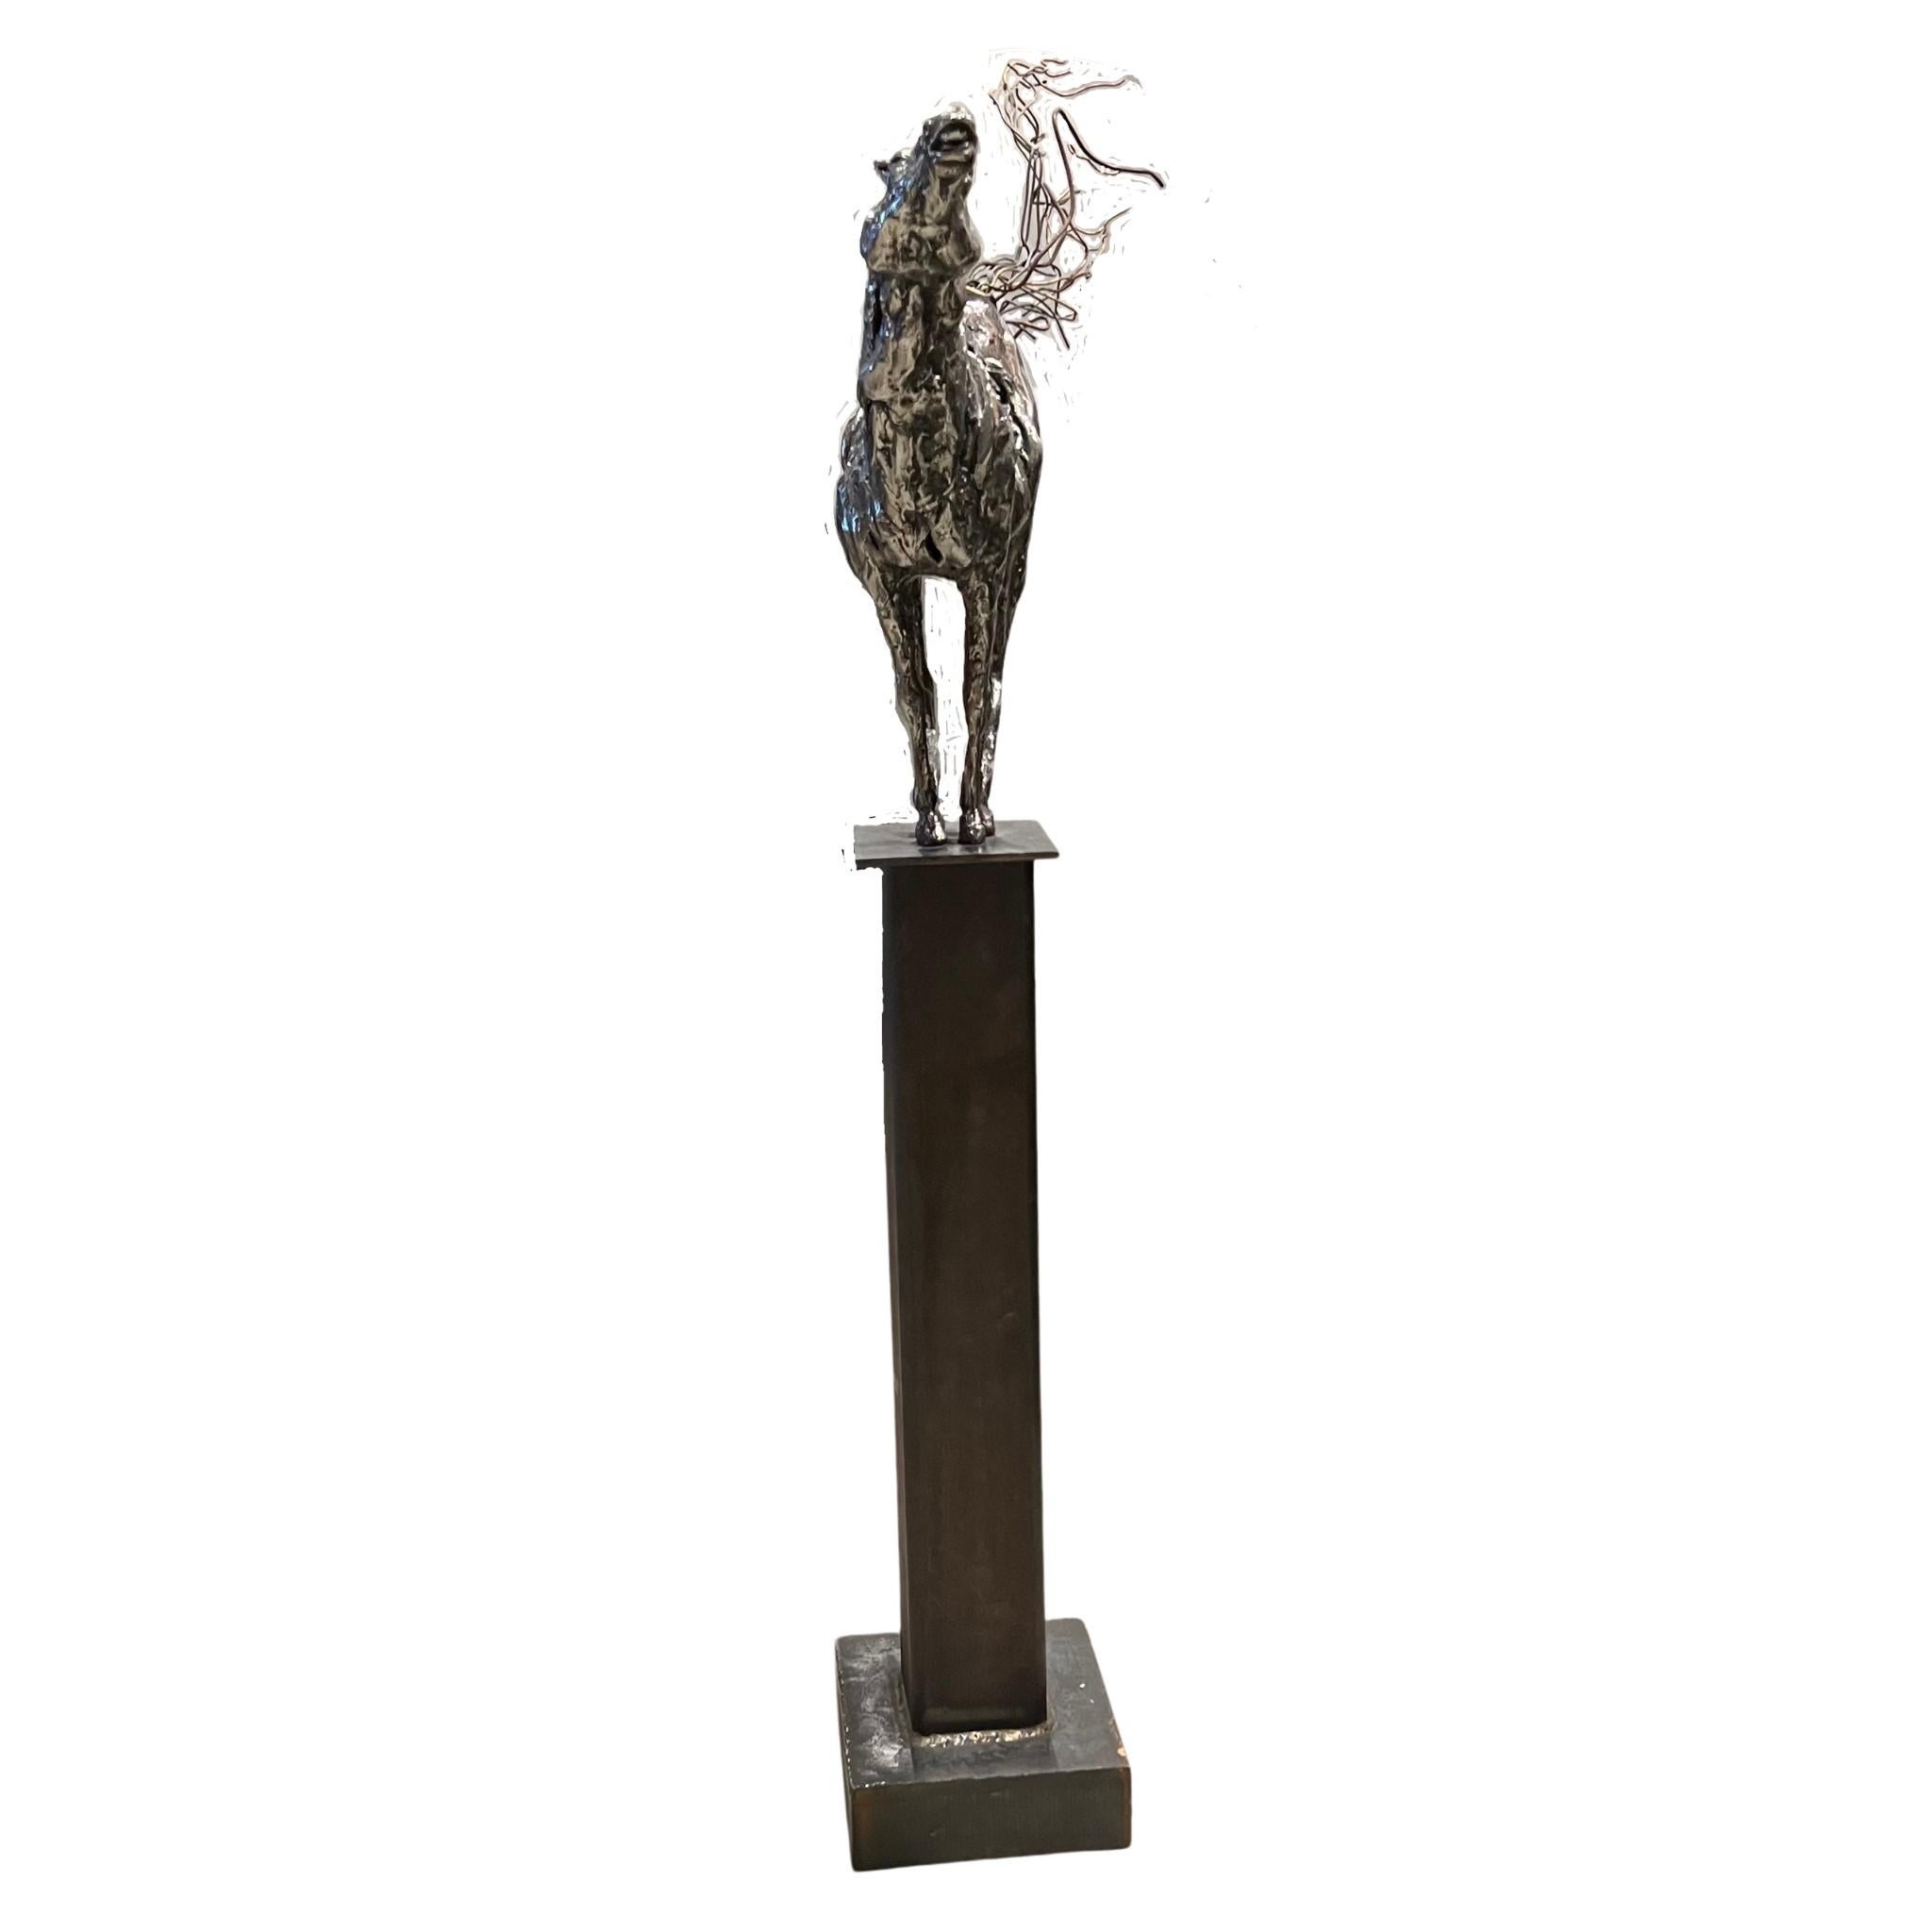 « Horselaugh » de Debbie Korbel 

Sculpture en acier inoxydable fabriquée à la main et montée sur un poteau en acier noir

Le cheval est soudé au support en acier et est autonome.

Queue en fil de fer

Unique en son genre, une très belle pièce